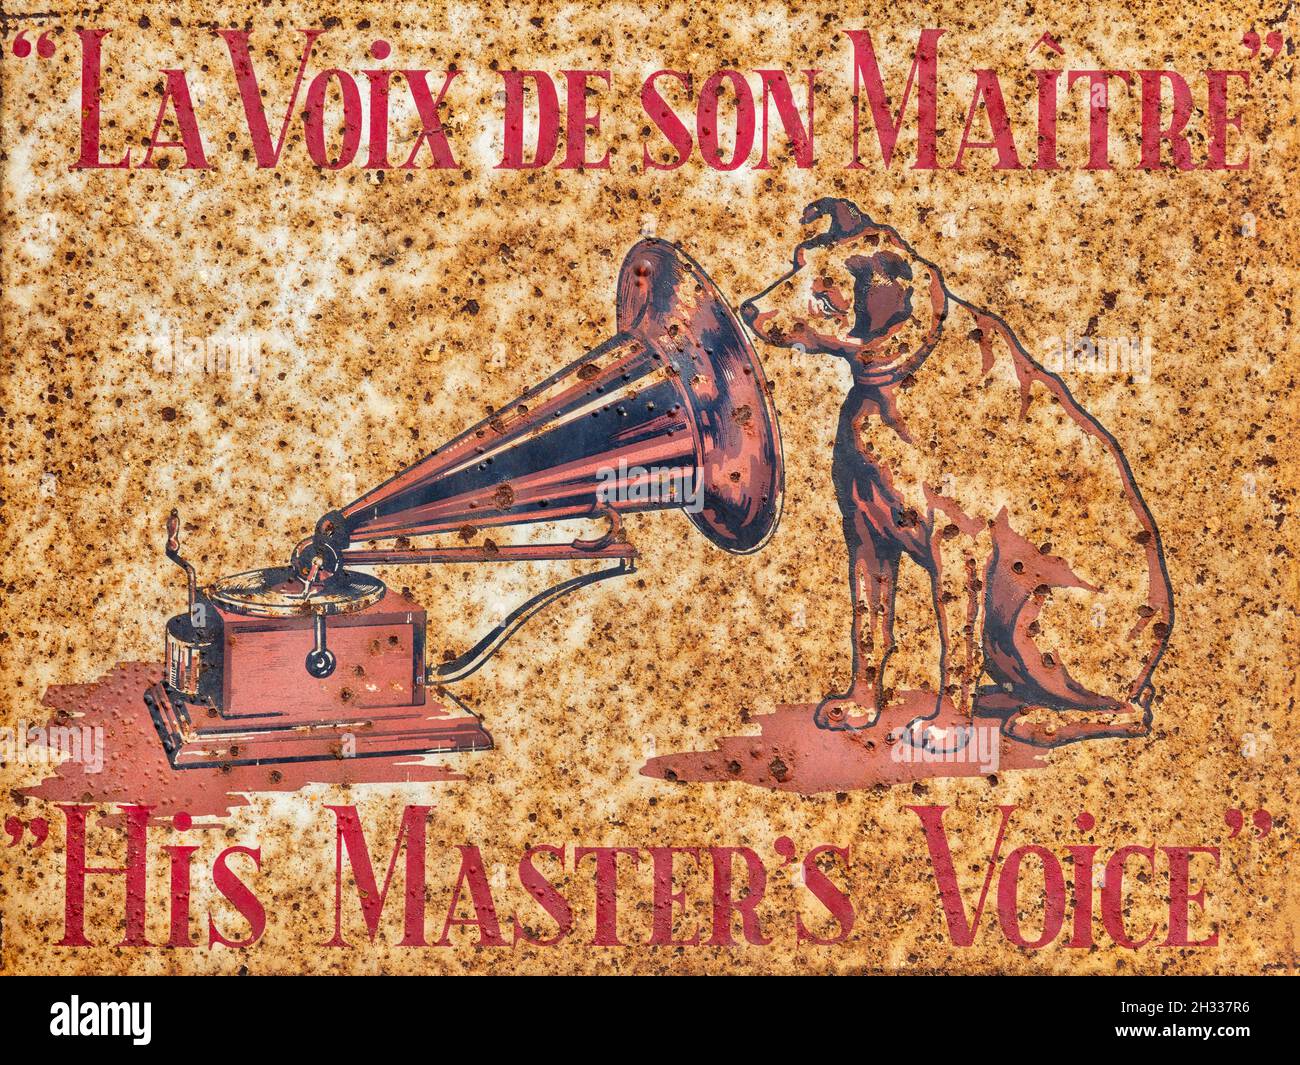 Den Bosch, Países Bajos - 12 de mayo de 2019: Acero fuertemente oxidado anuncio manteca de la compañía de música Su Masters Voice en Den Bosch, Países Bajos Foto de stock